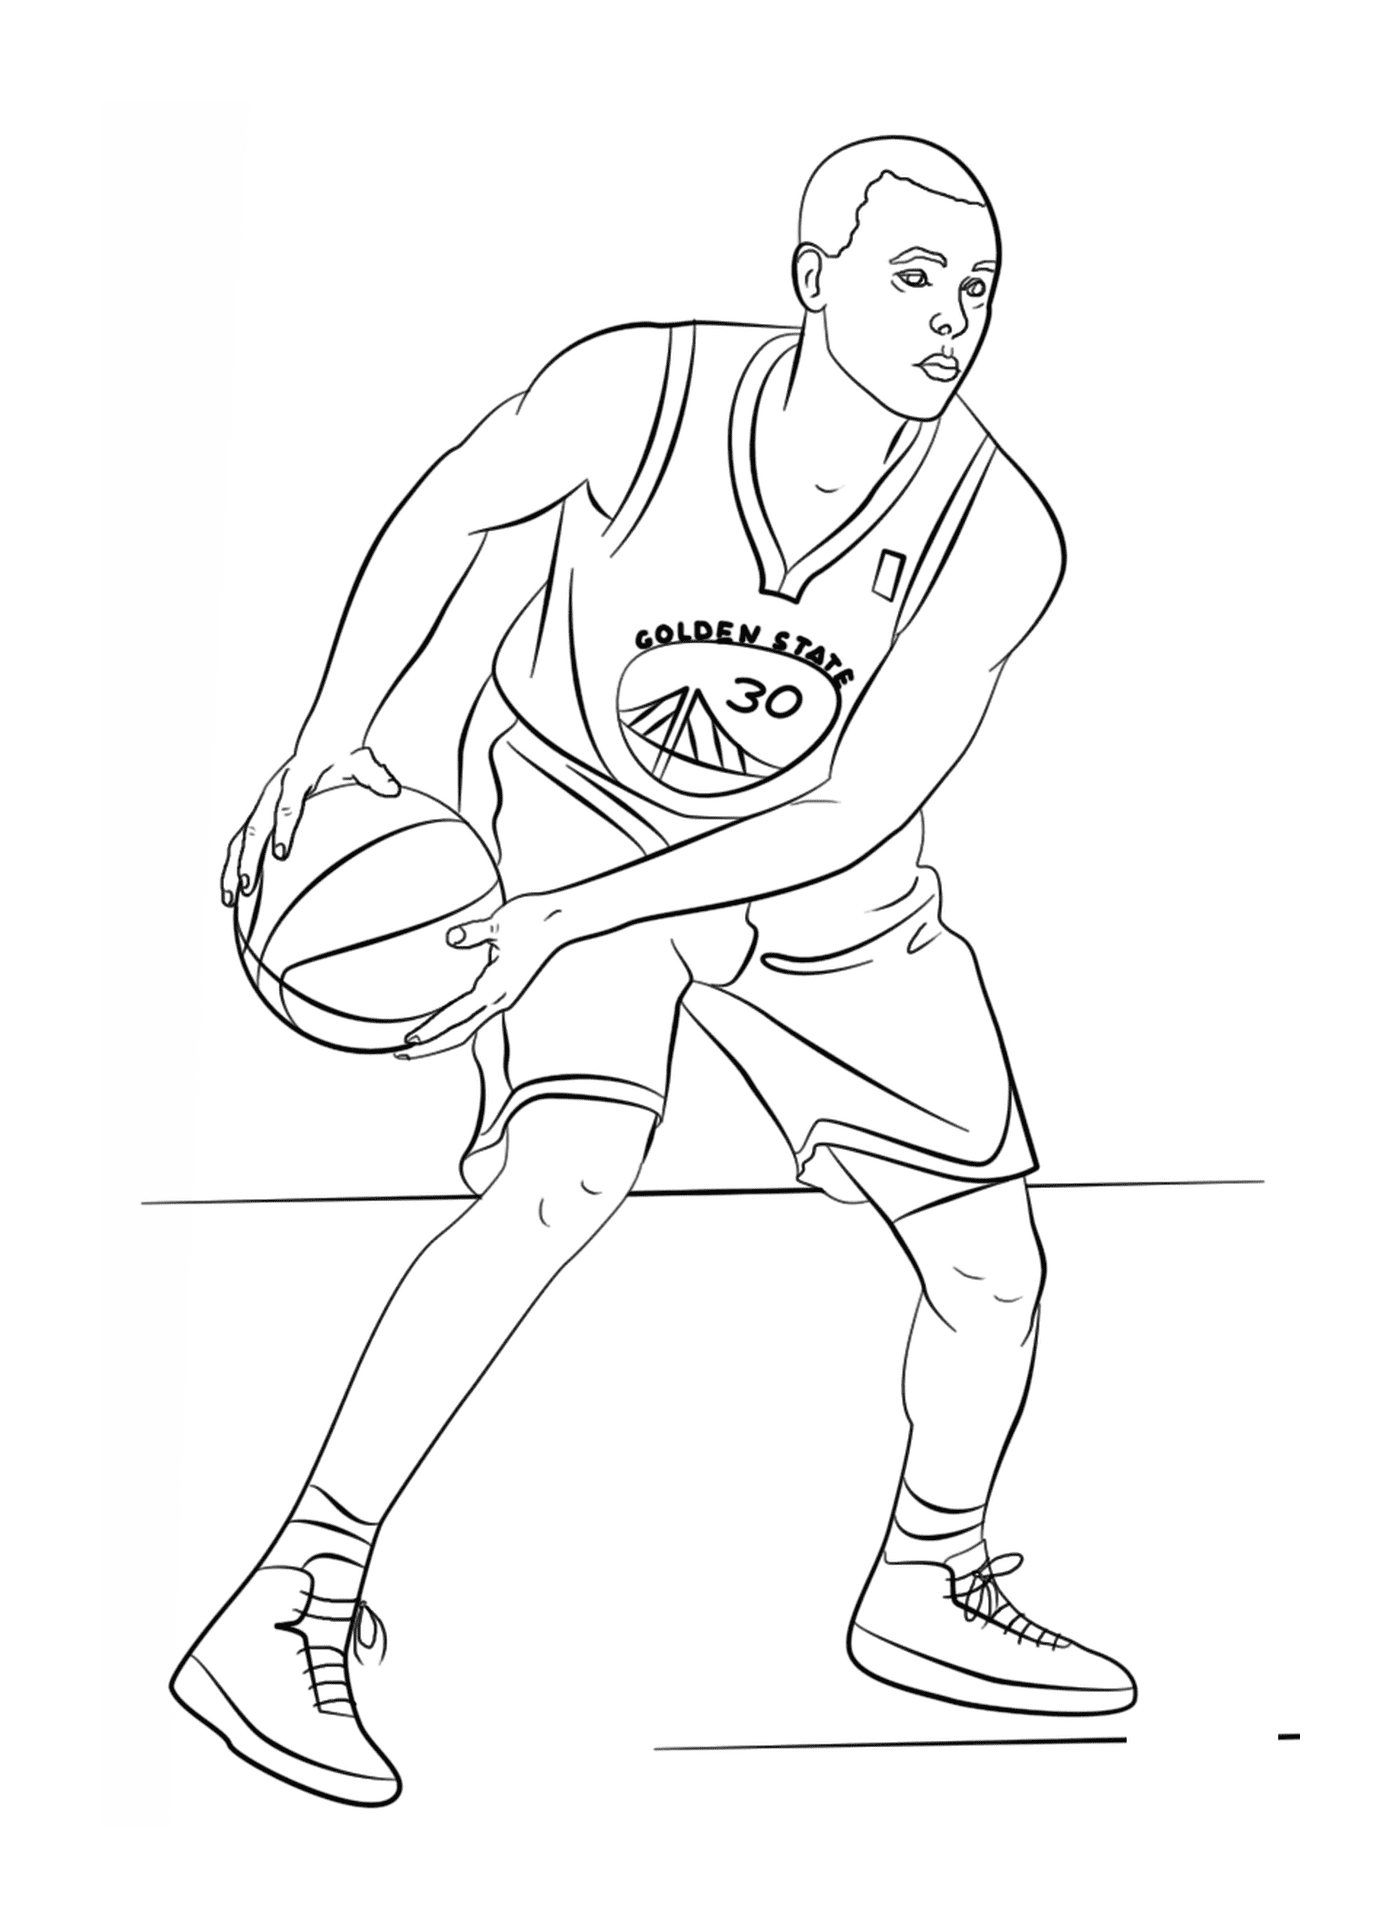   Stephen Curry, joueur de basket de la NBA 